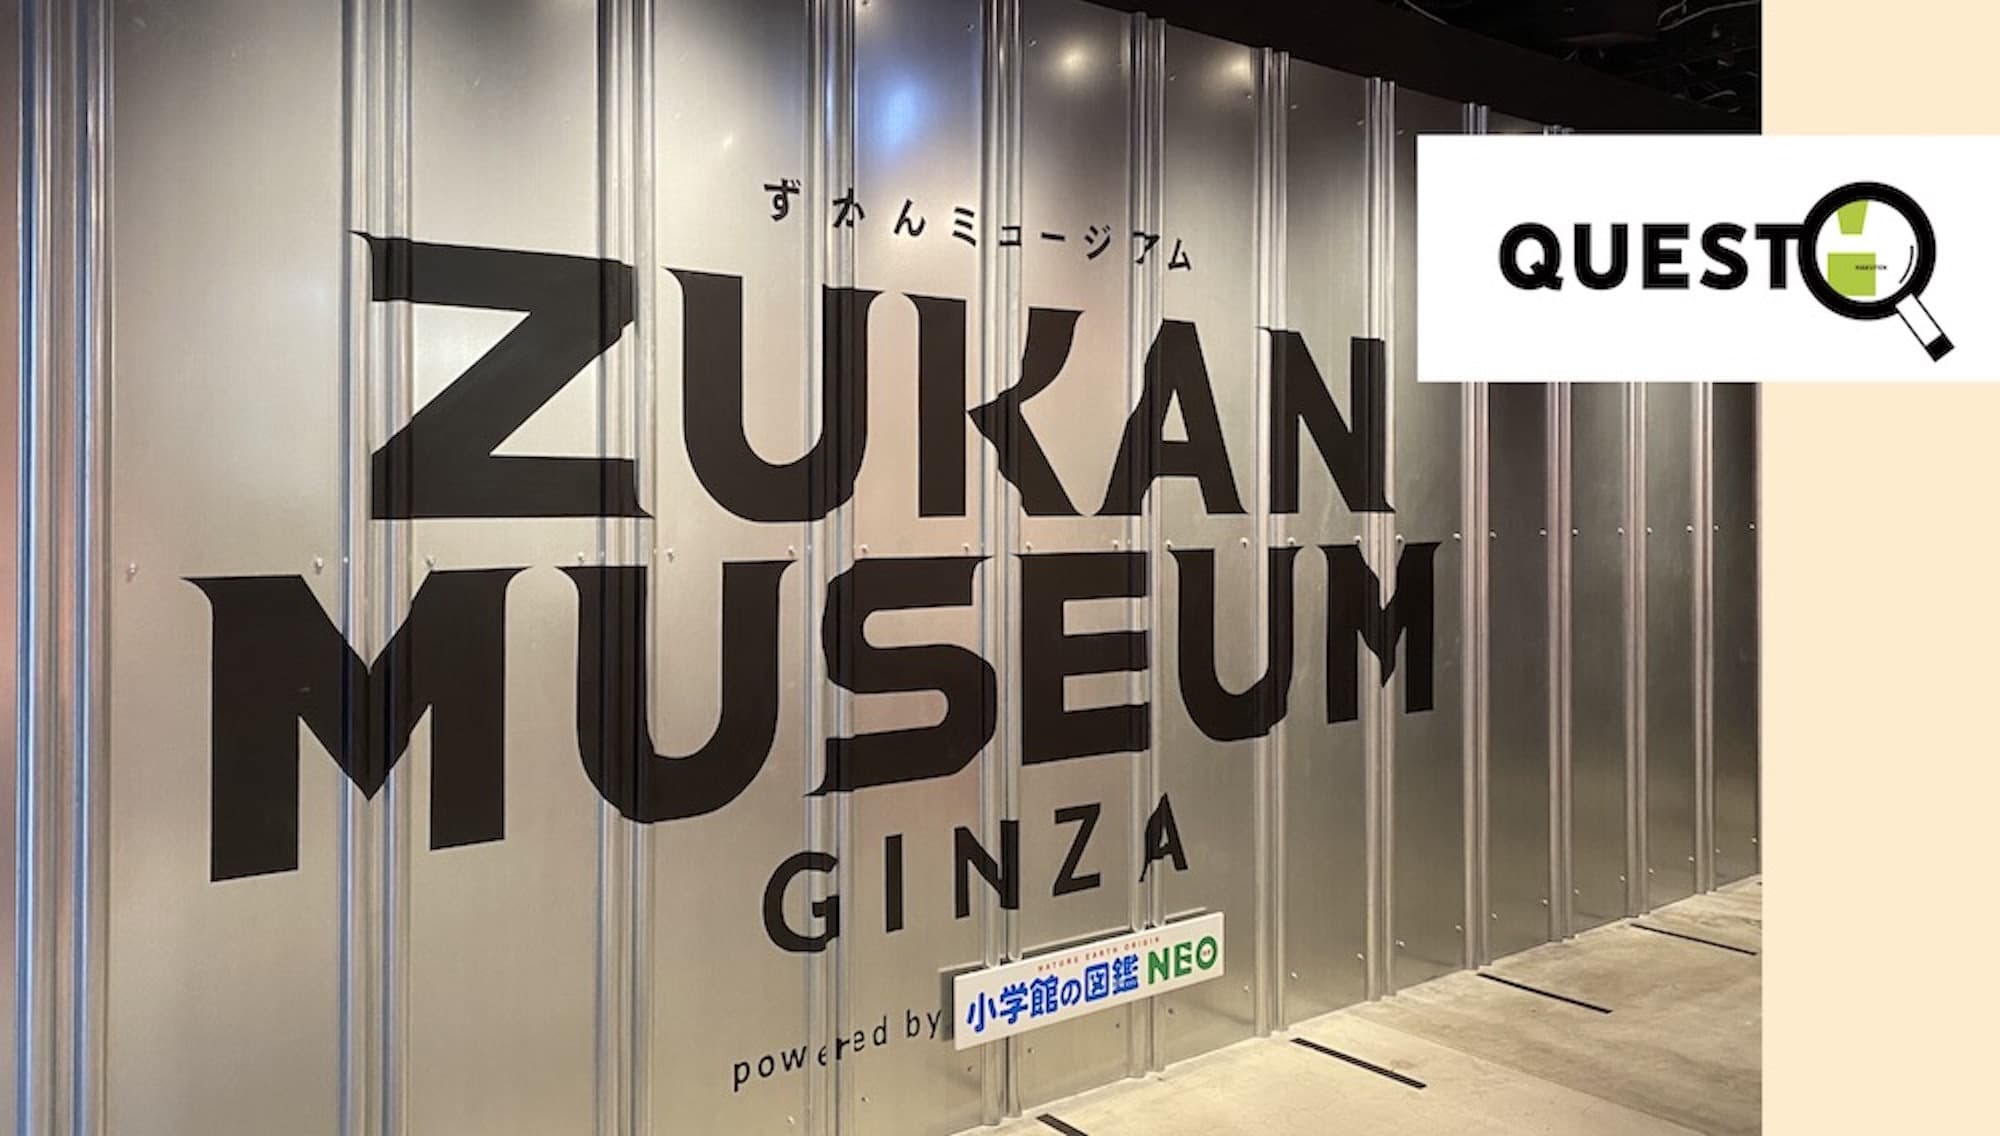 世界中の生物を探す旅に出よう！<br>好奇心が溢れる 『ZUKAN MUSEUM GINZA』